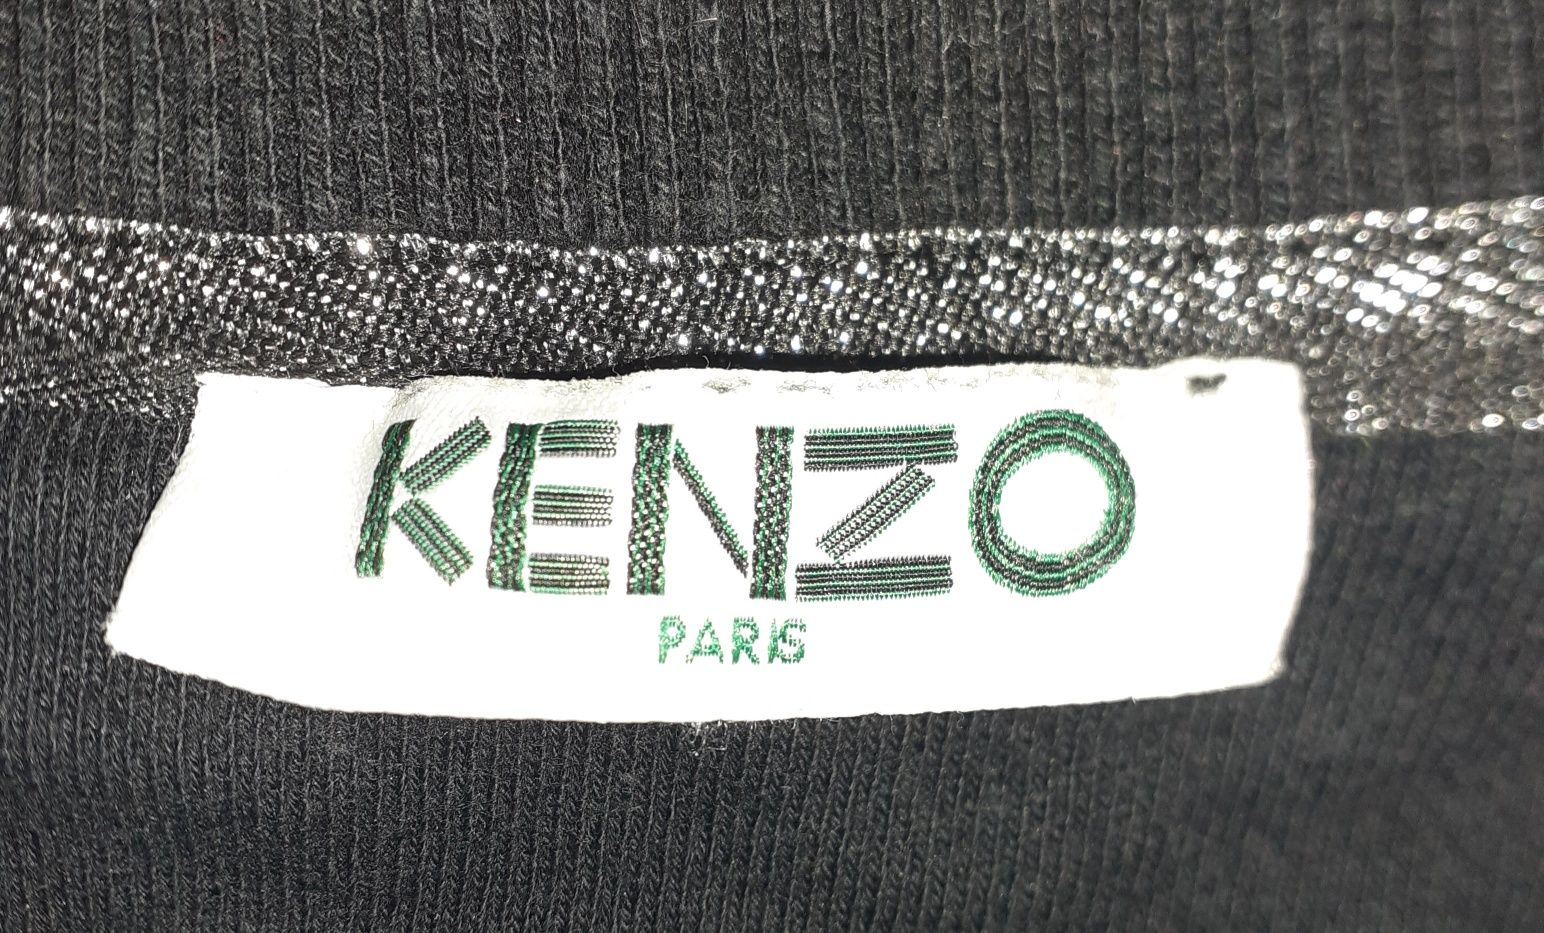 Bluza KENZO originală damă Size S. Impecabilă. Produs original.